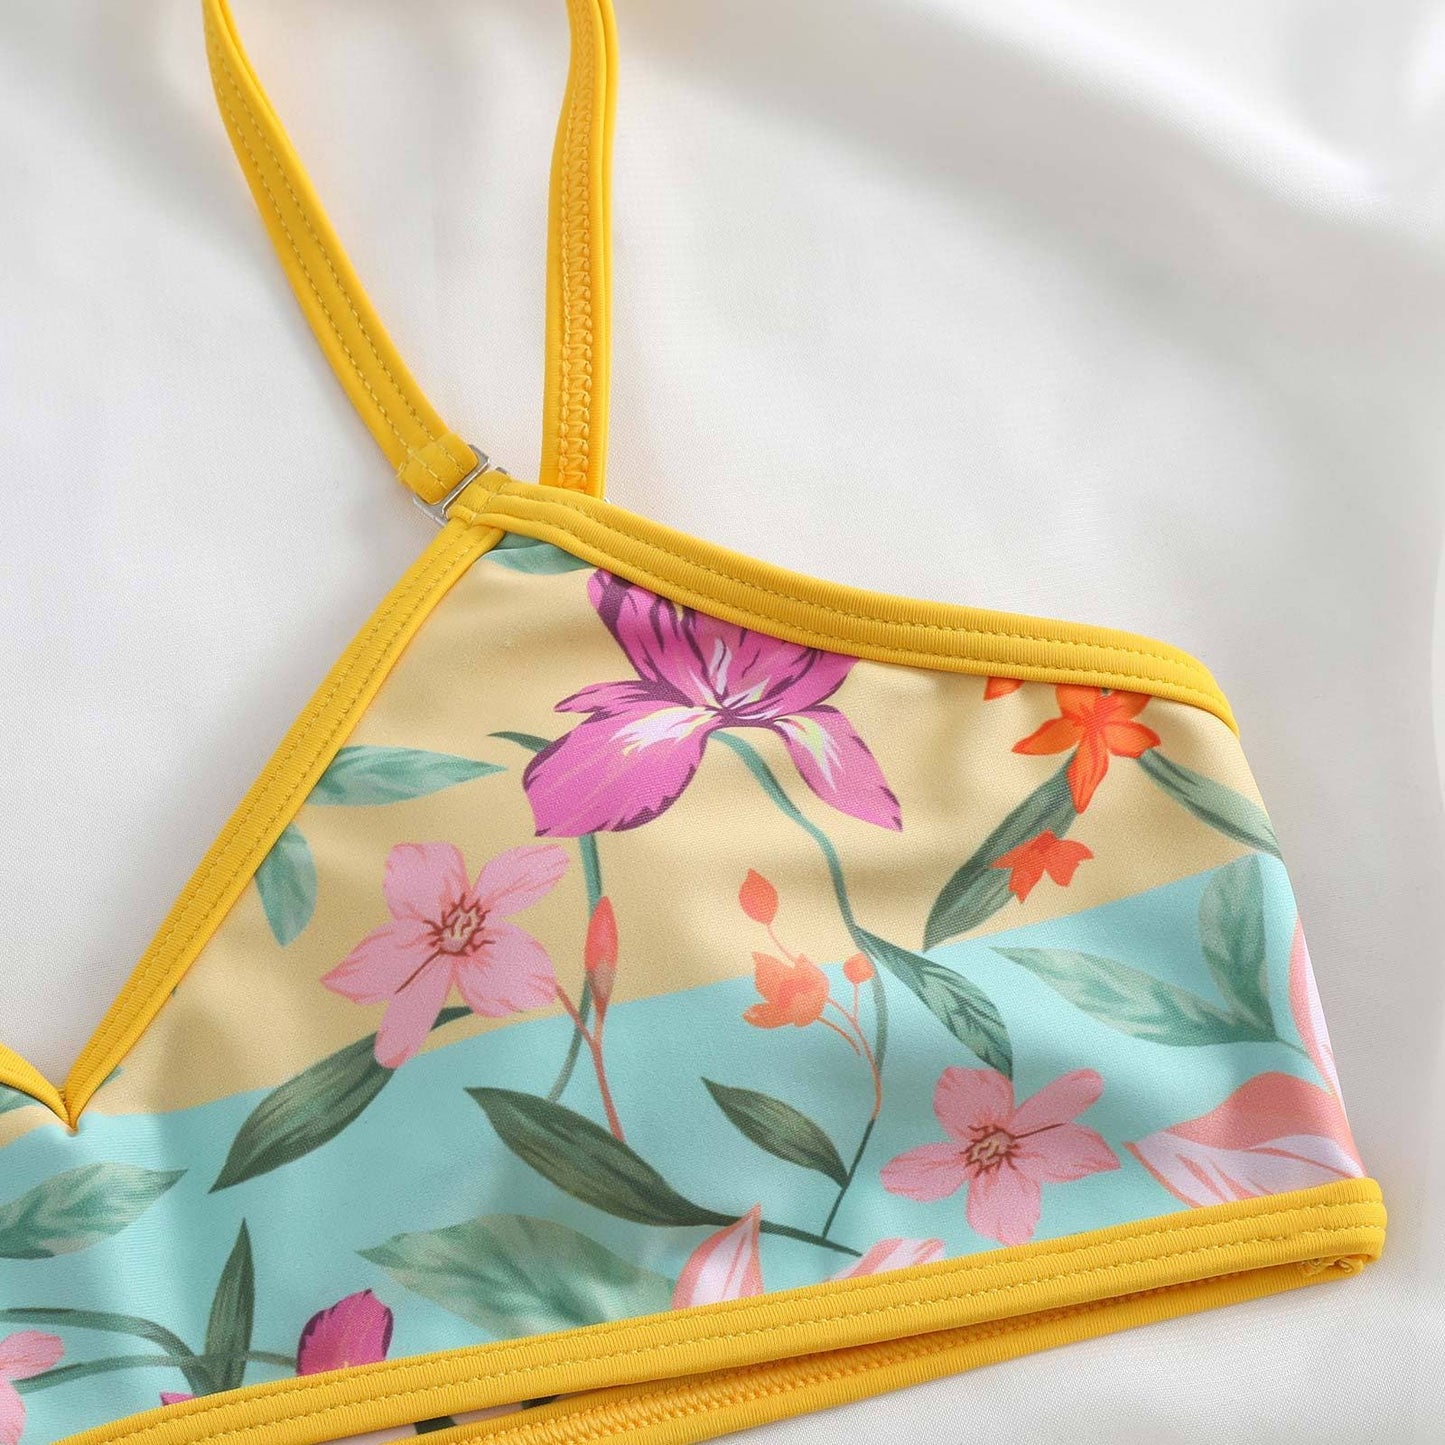 Flower print contrast v neck 2-way cami 3 piece swimwear